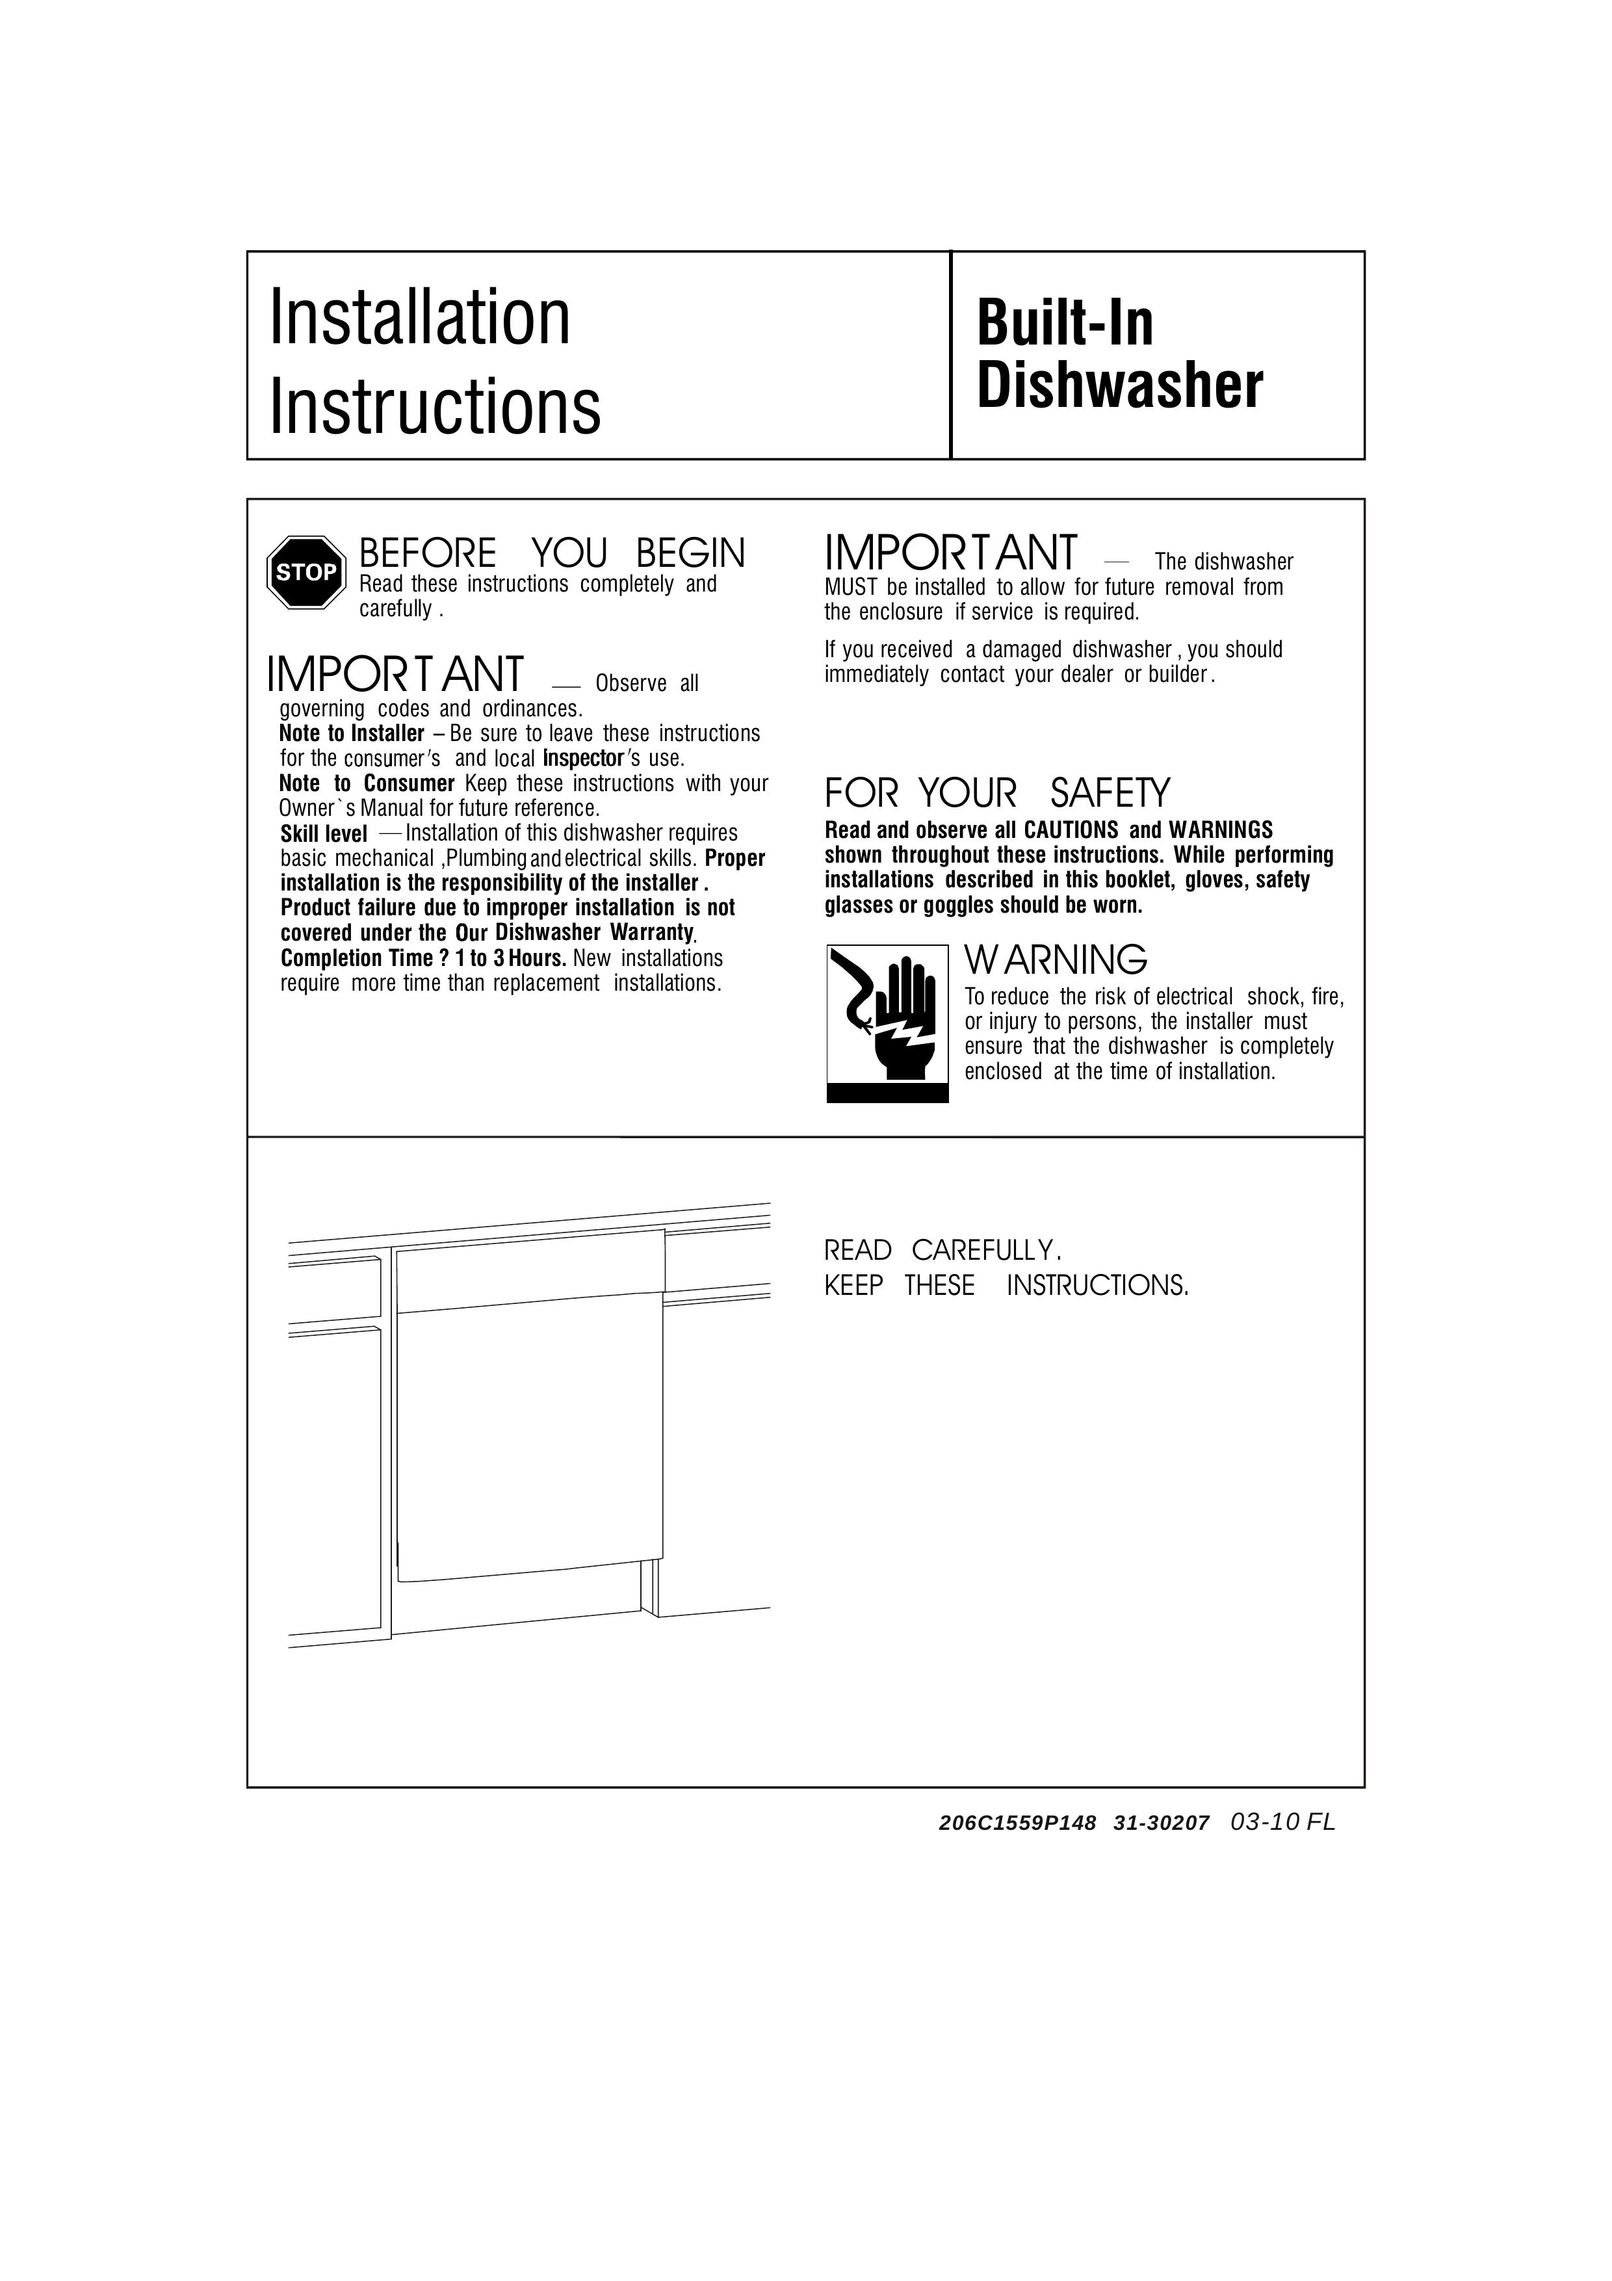 GE 206C1559P148 Dishwasher User Manual